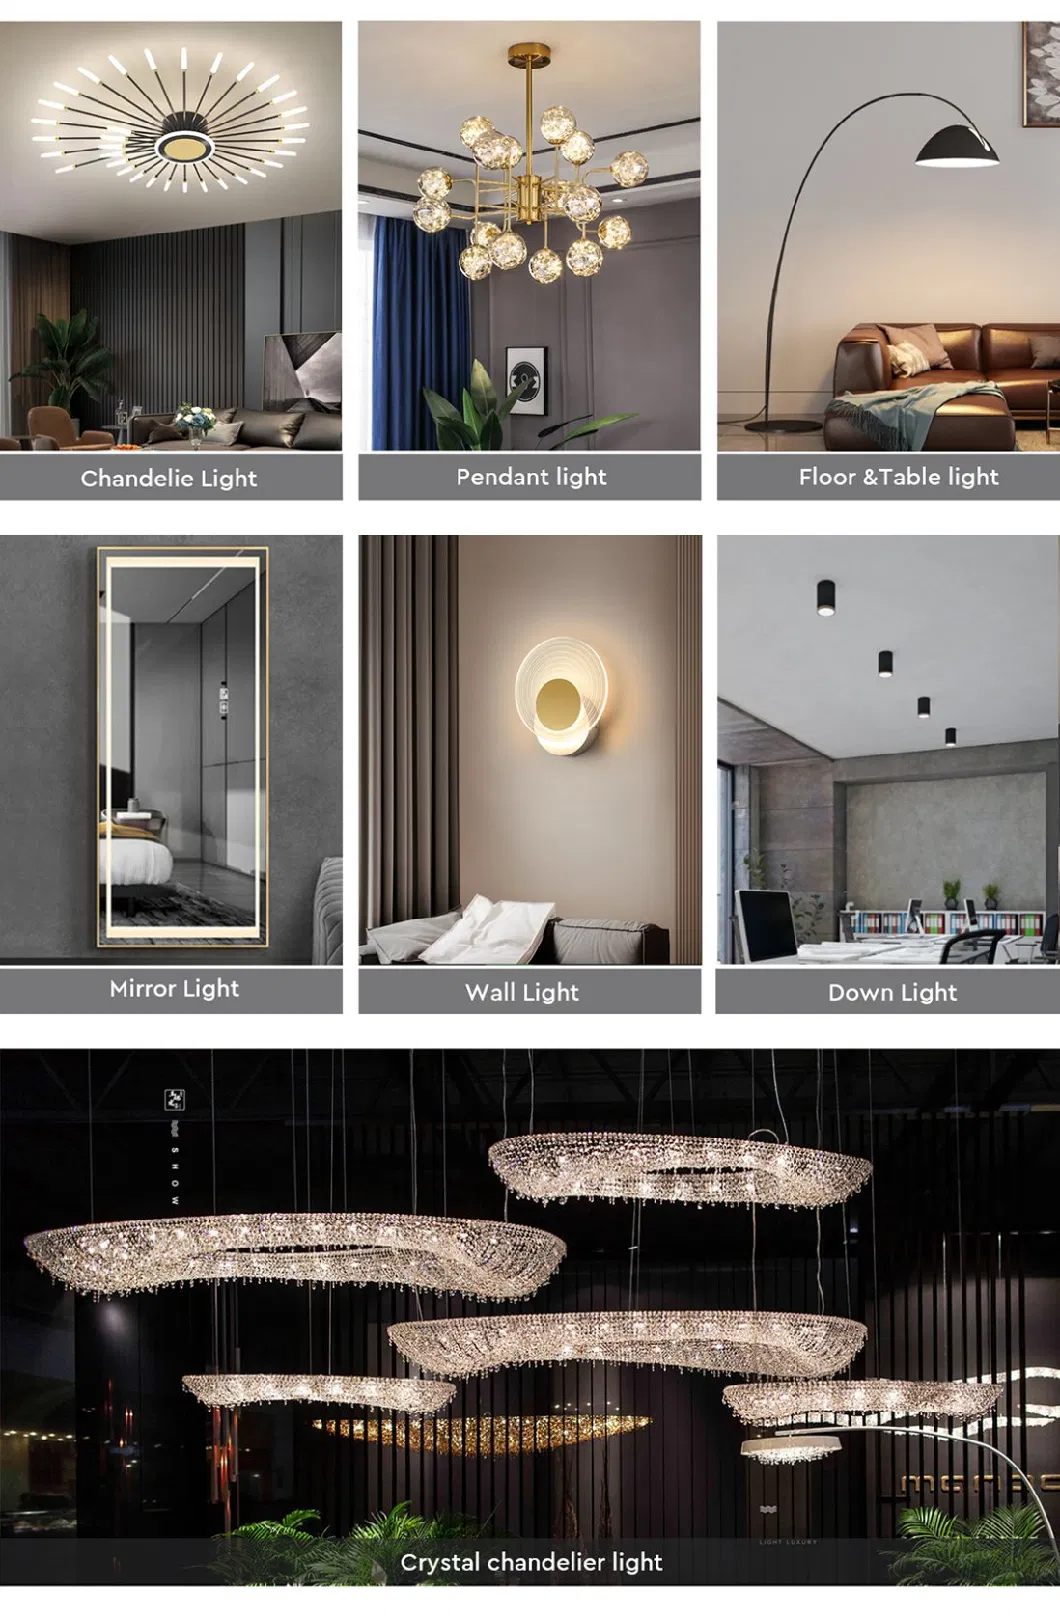 Super Skylite Lightings ceiling Modern Living Room Lamp LED LED Light for Offce Flush Mount Ceiling Lights